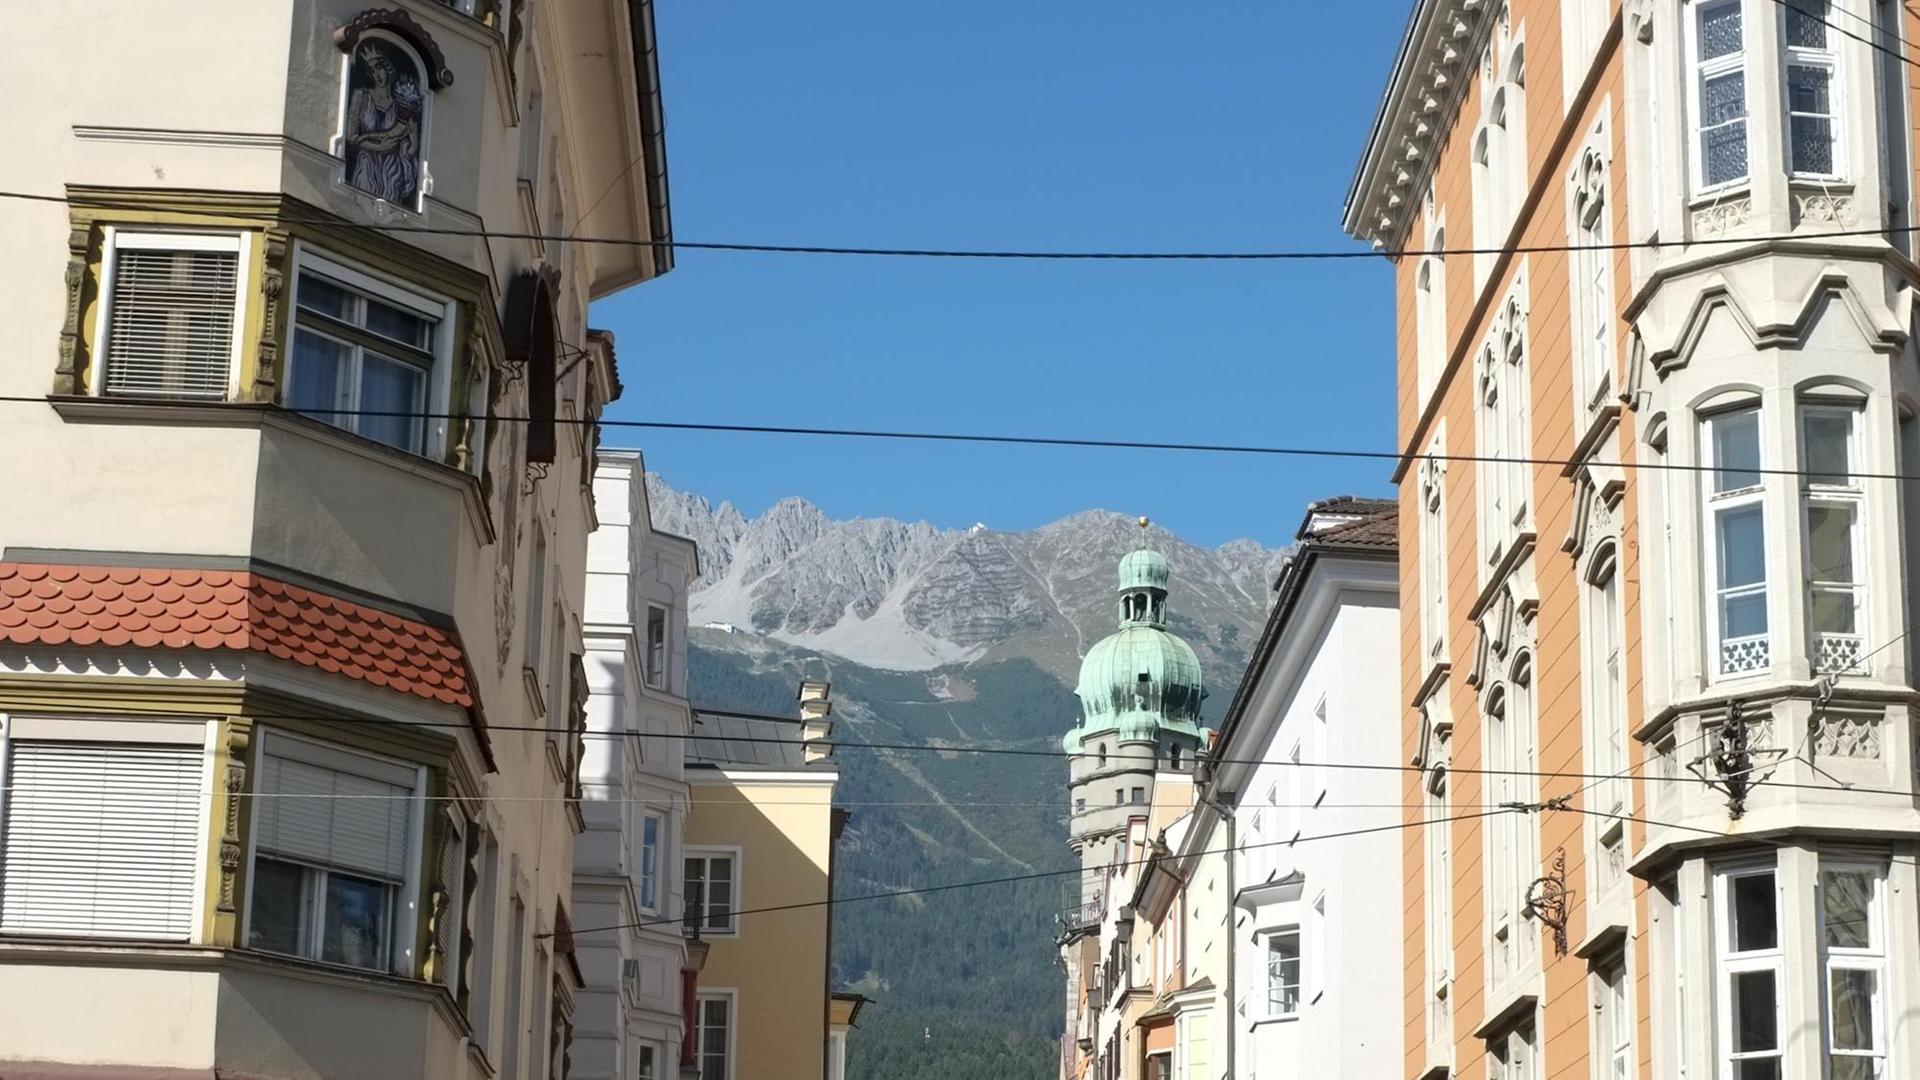 Die Altstadt von Innsbruck